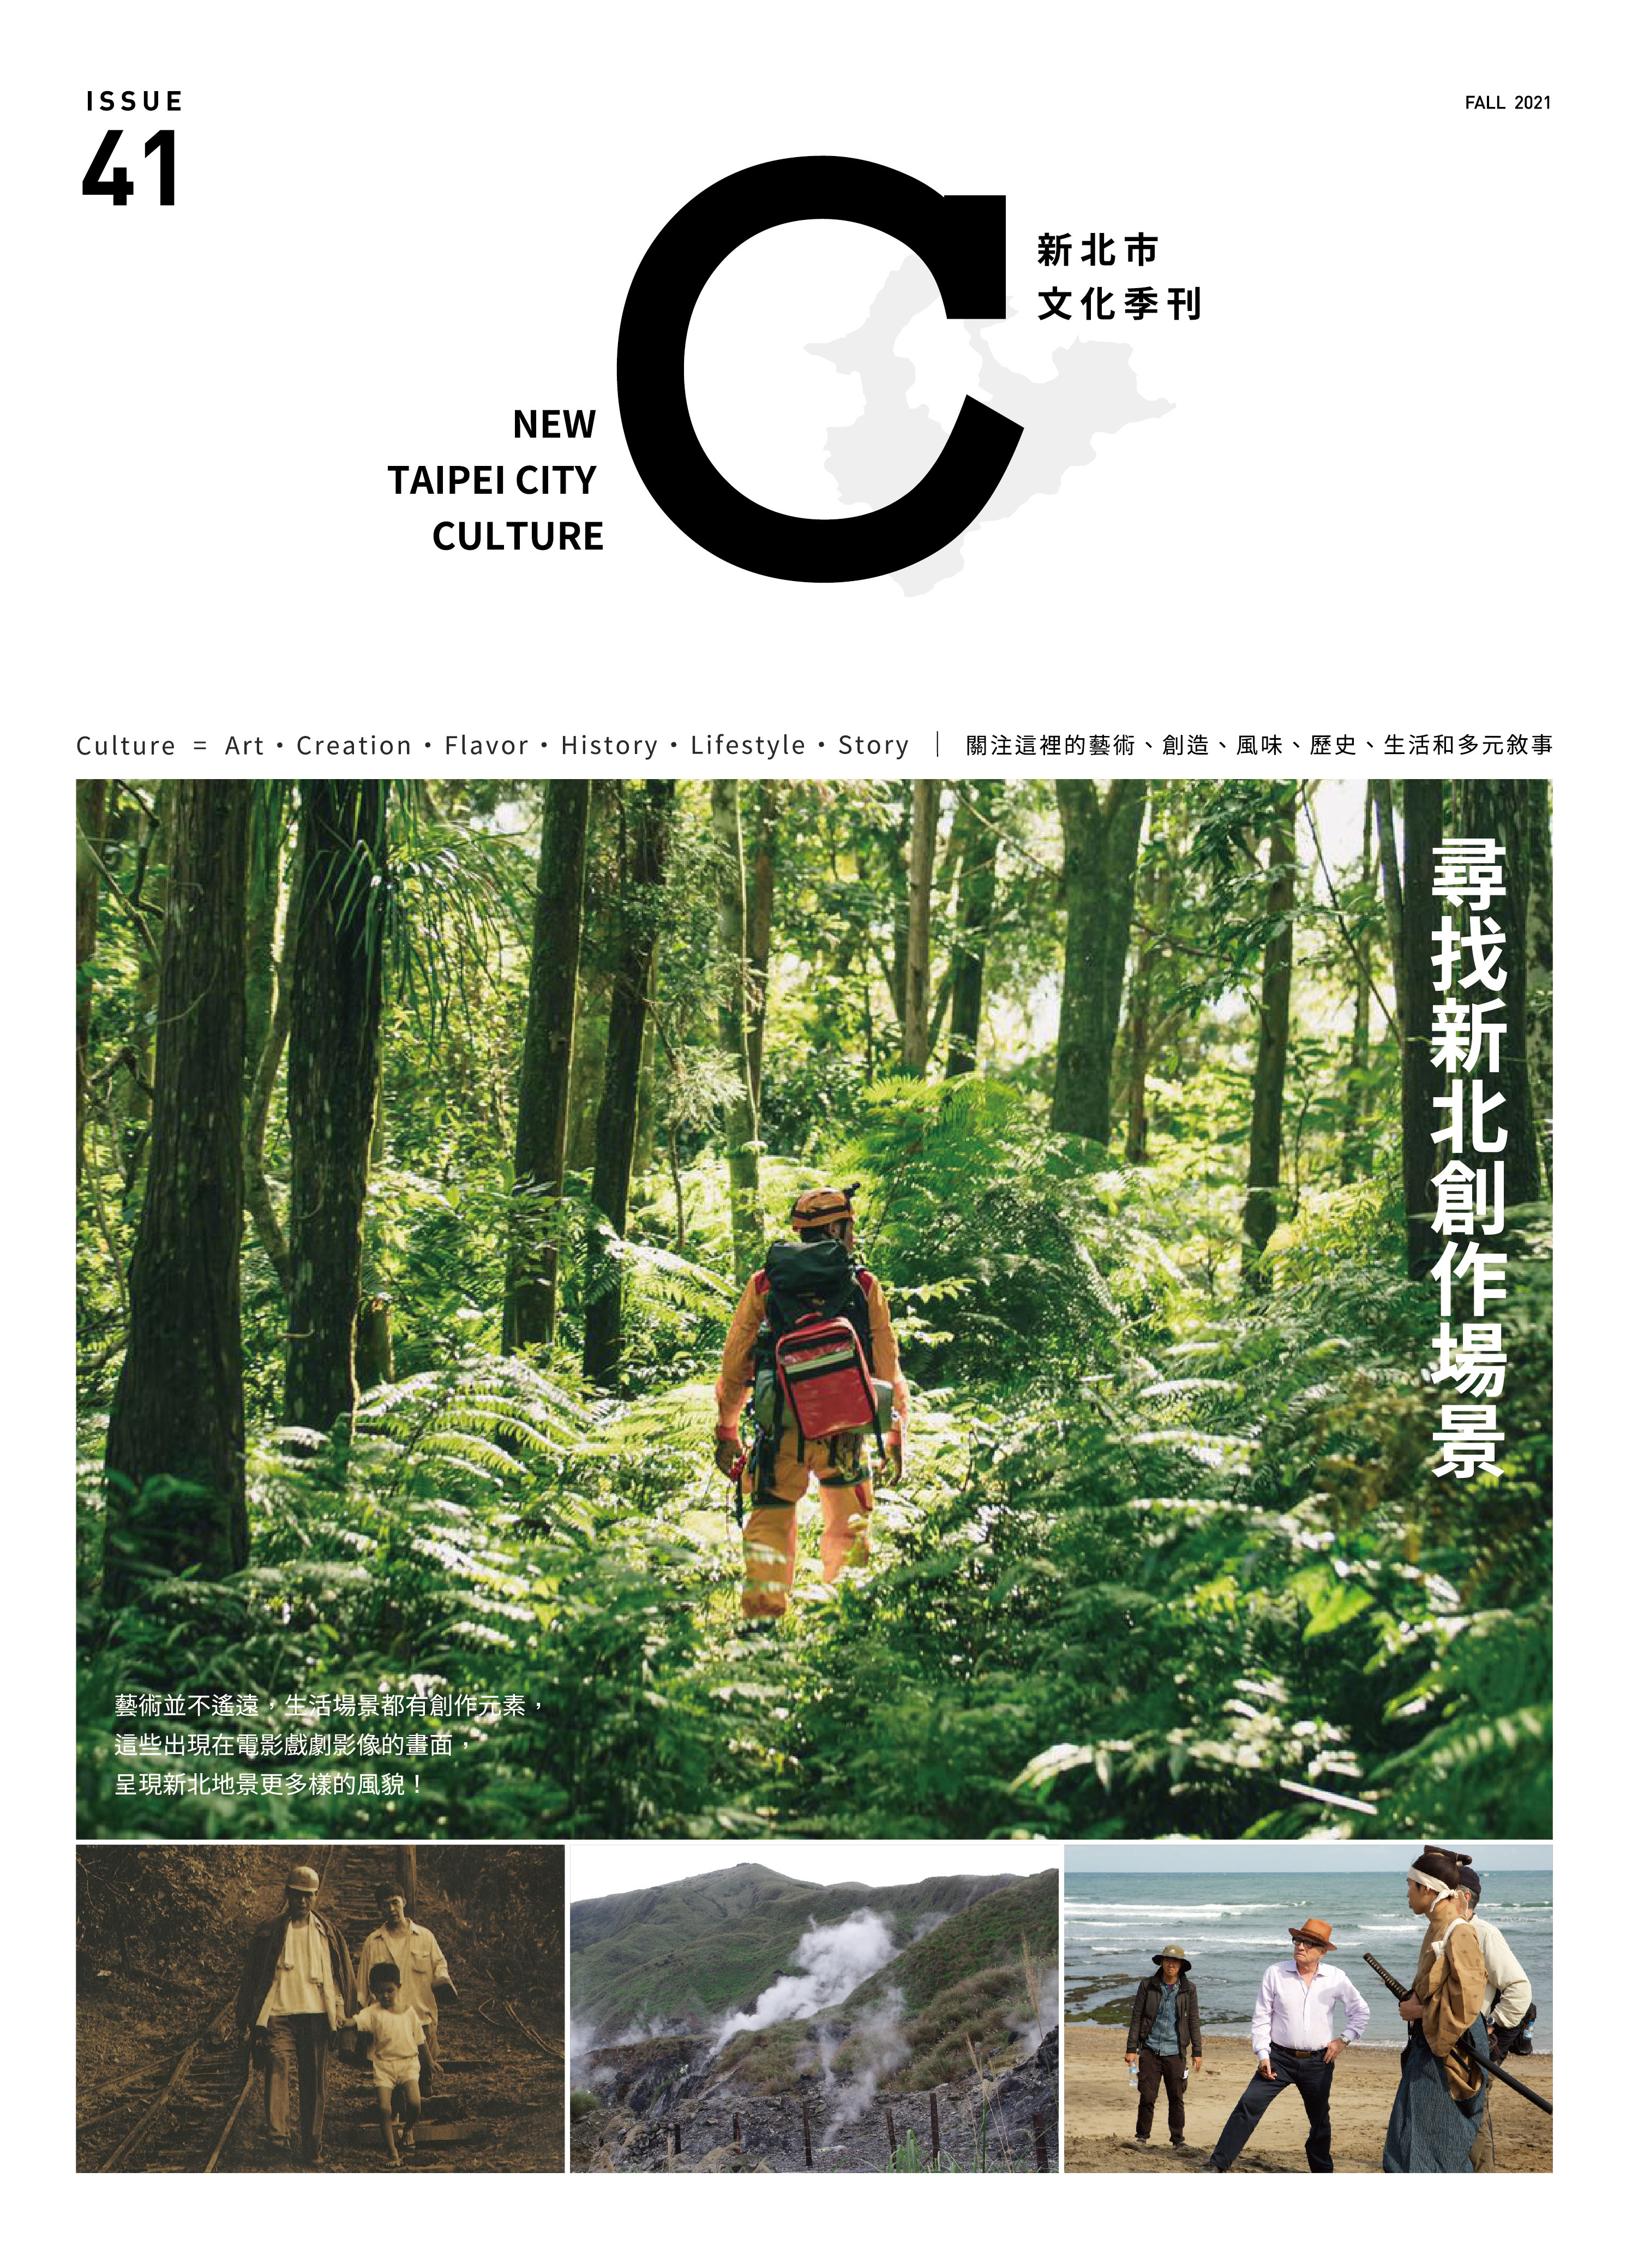 第41期《新北市文化》季刊即將於10月25日出刊